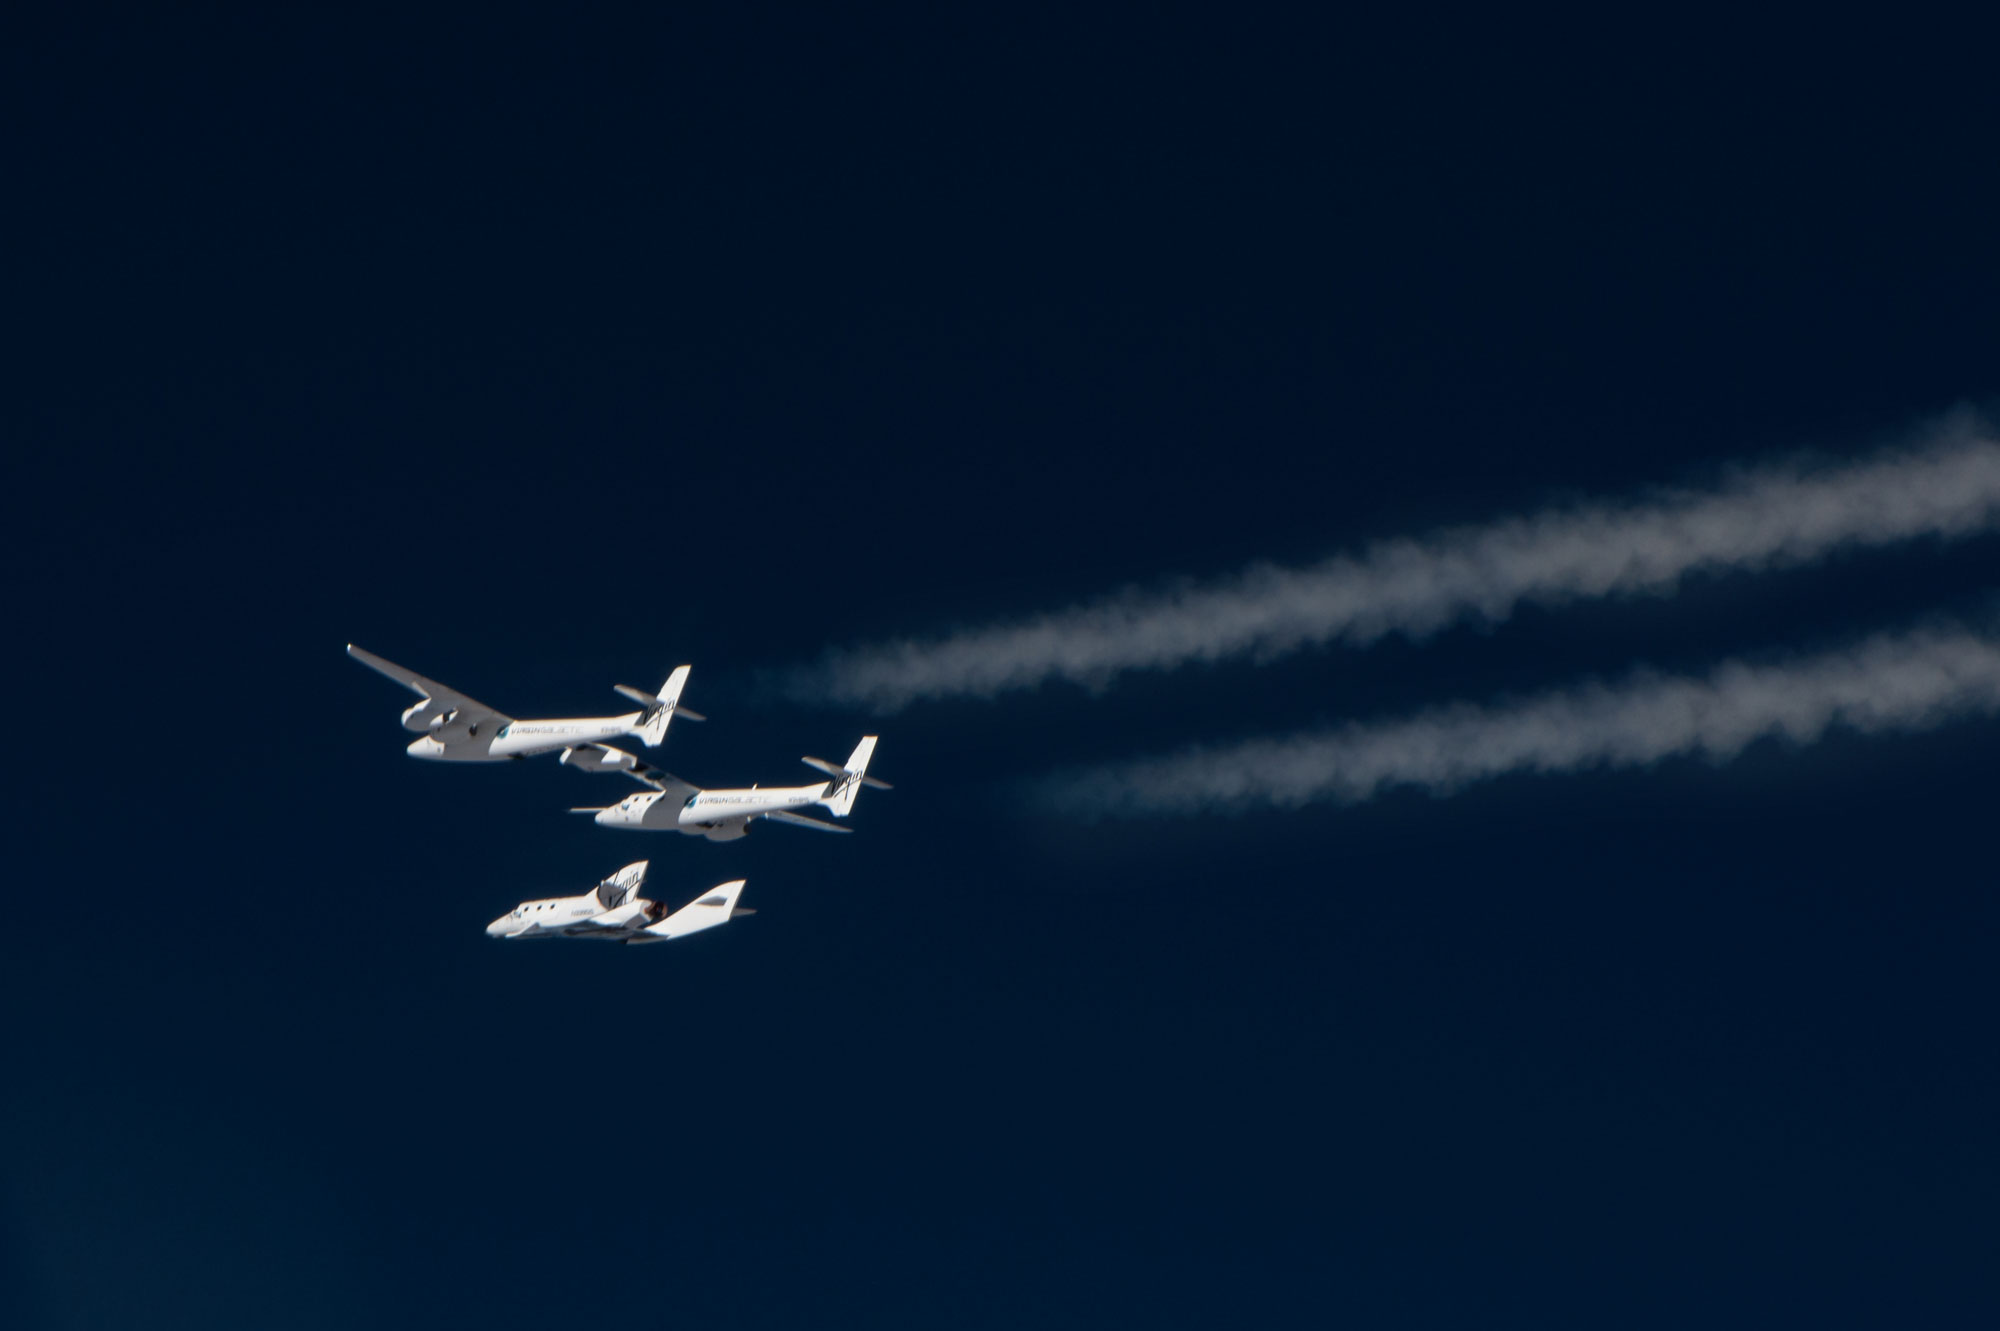 Le SpaceShipTwo sera lancé depuis le White Knight 2, un avion de 43 m d'envergure, l'emportant sous la voilure centrale jusqu'à une vingtaine de kilomètres d'altitude où s'effectuera la séparation des deux engins. Le SpaceShipTwo utilisera alors son propre système de propulsion pour rejoindre l'espace. © Virgin Galactic